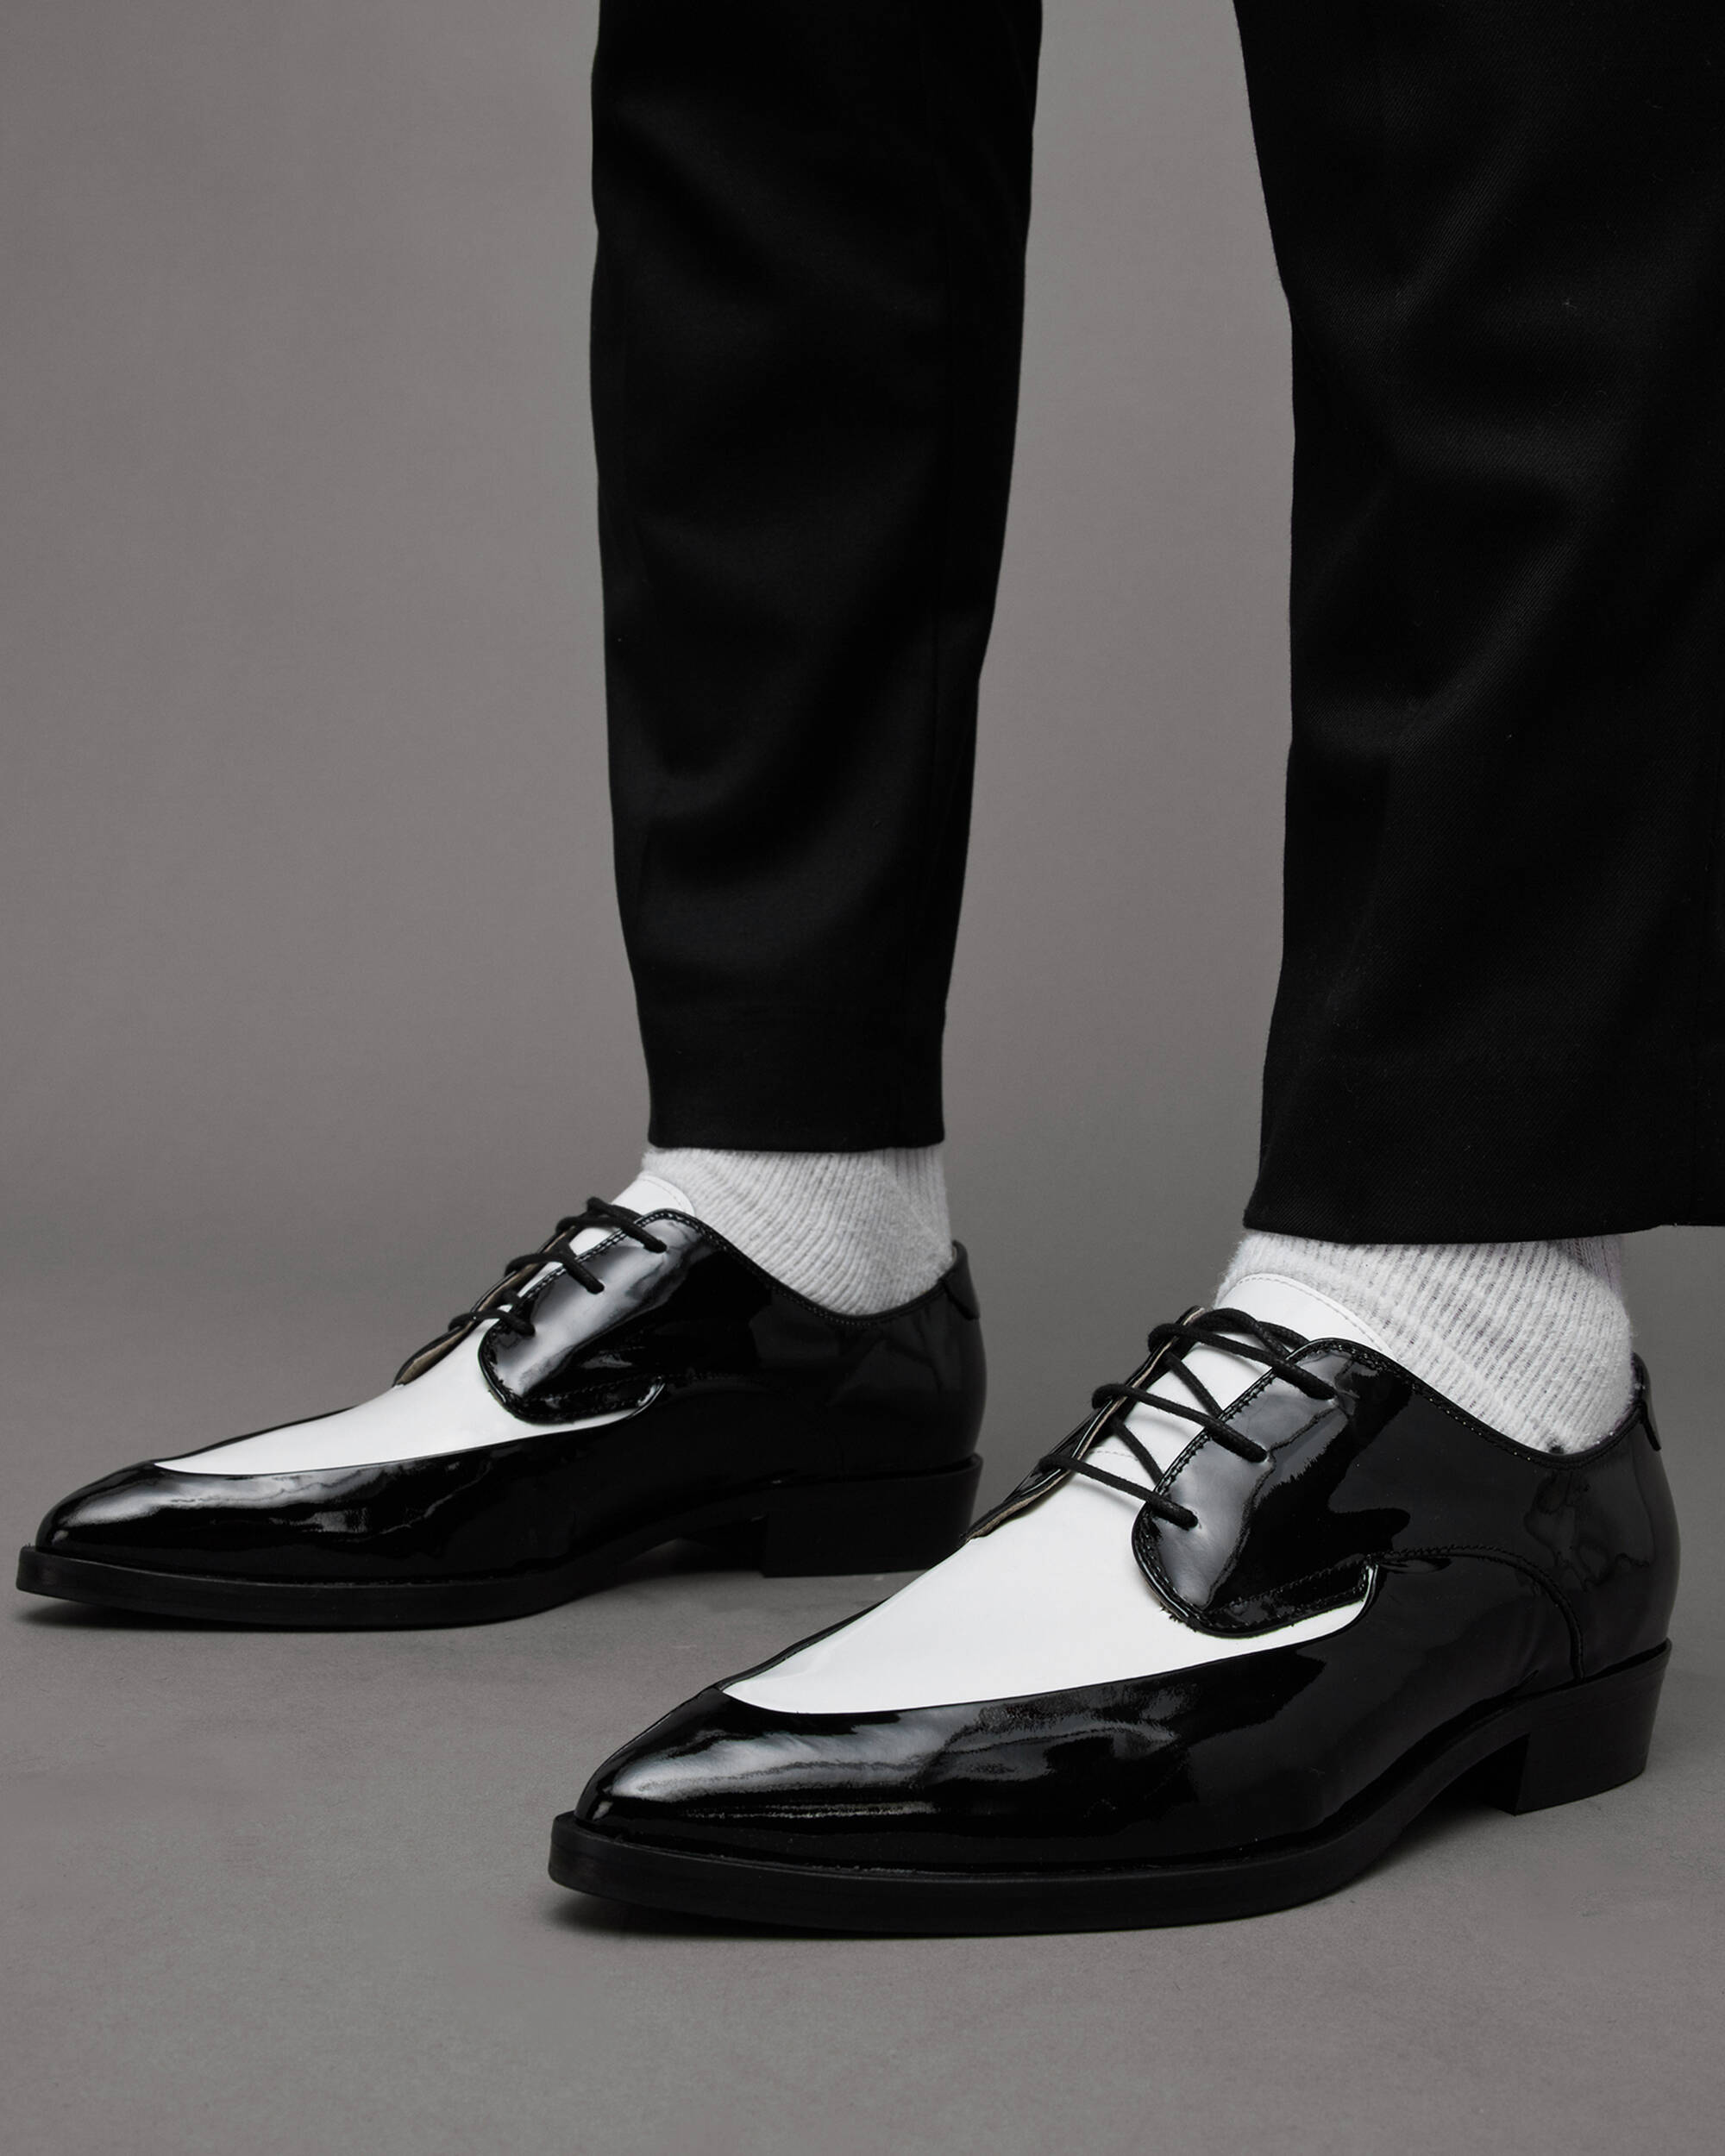 Lex Patent Leather Lace Up Shoes Black/White | ALLSAINTS Canada